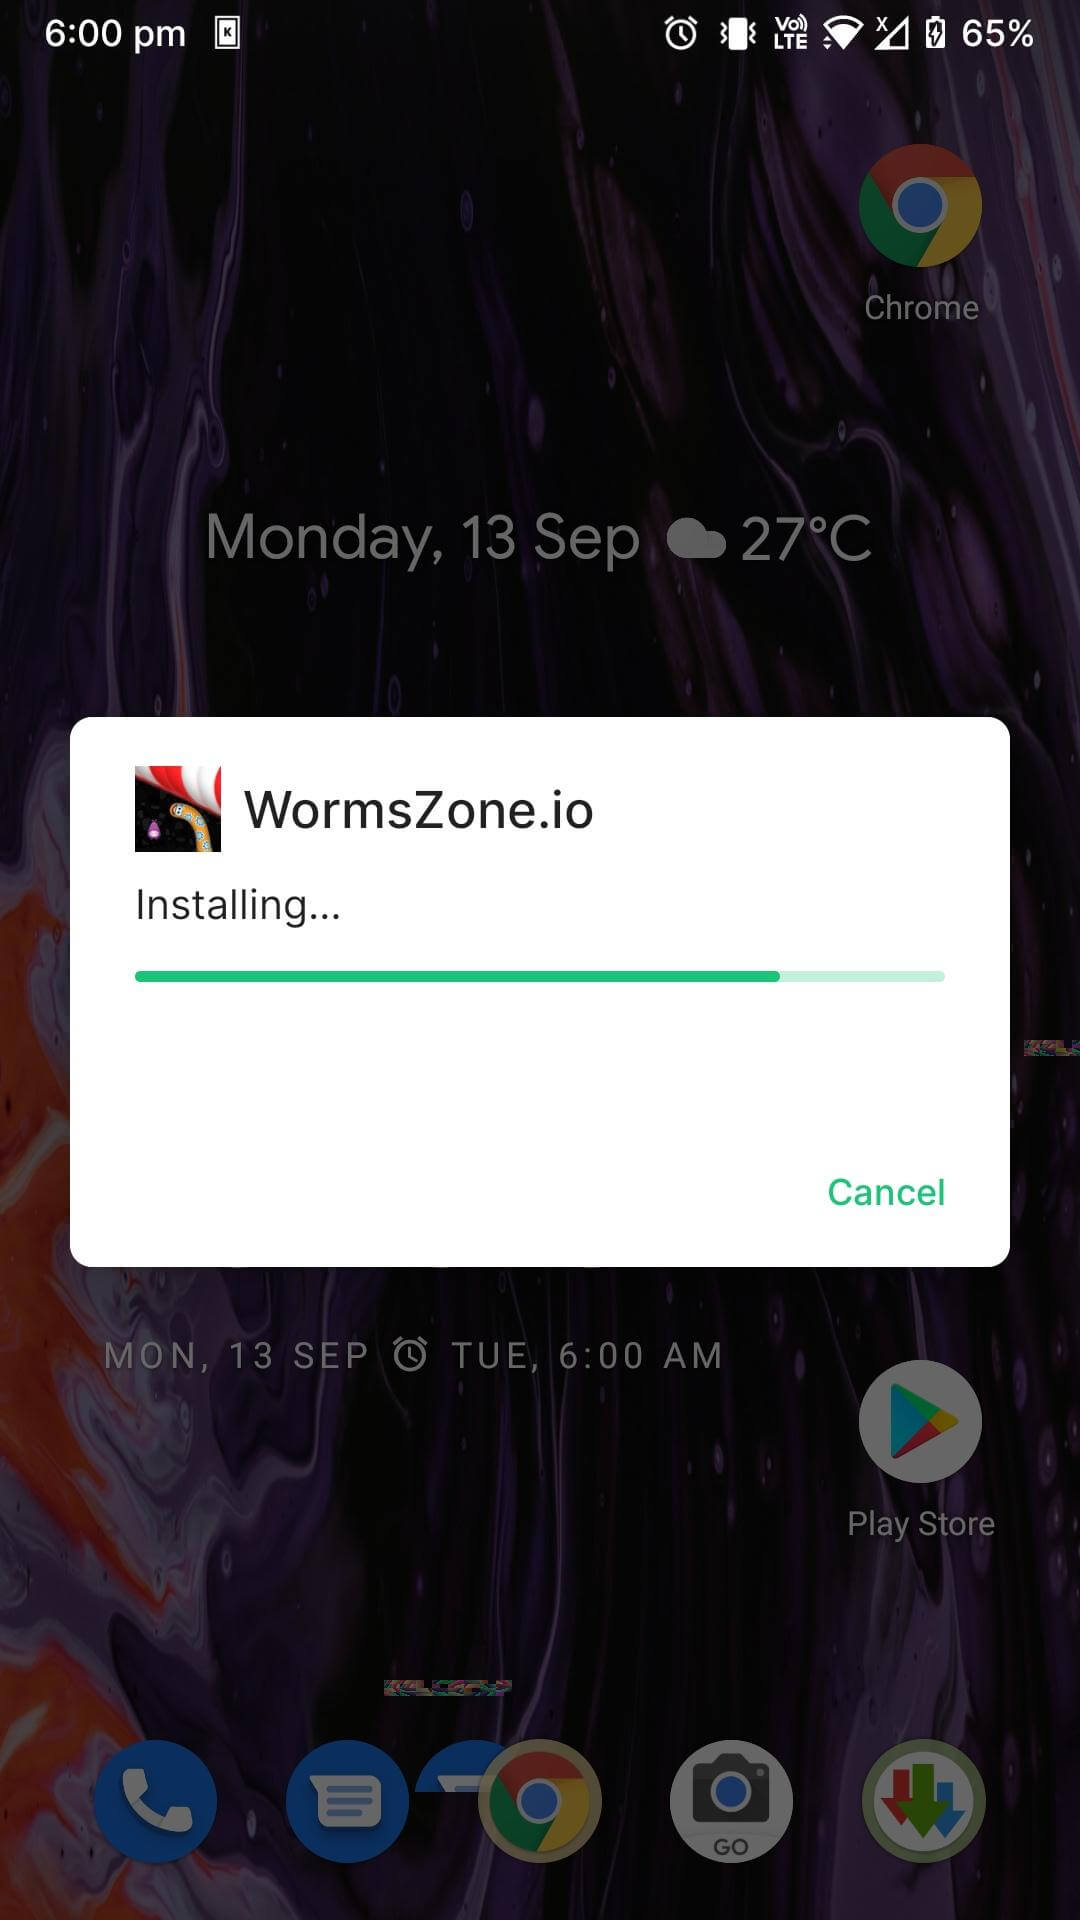 worms zone.io mod apk installed